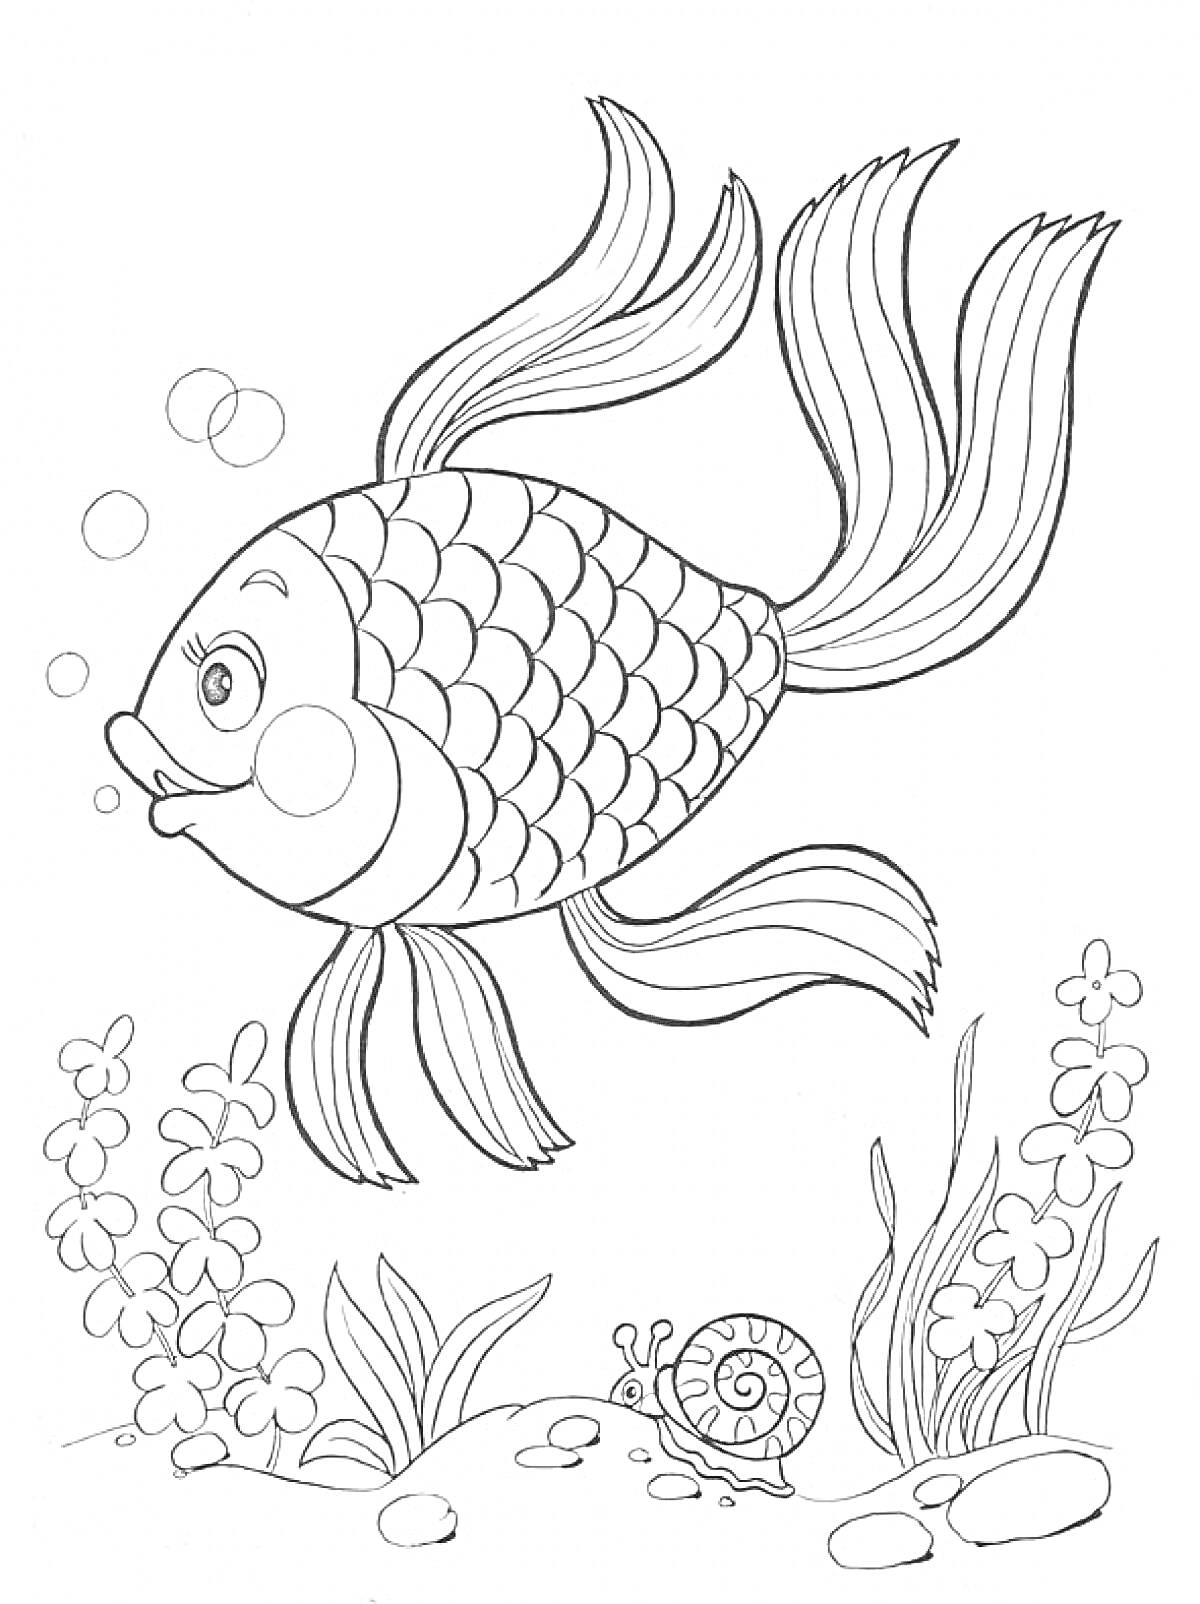 Рыбка с водорослями, камнями и улиткой под водой